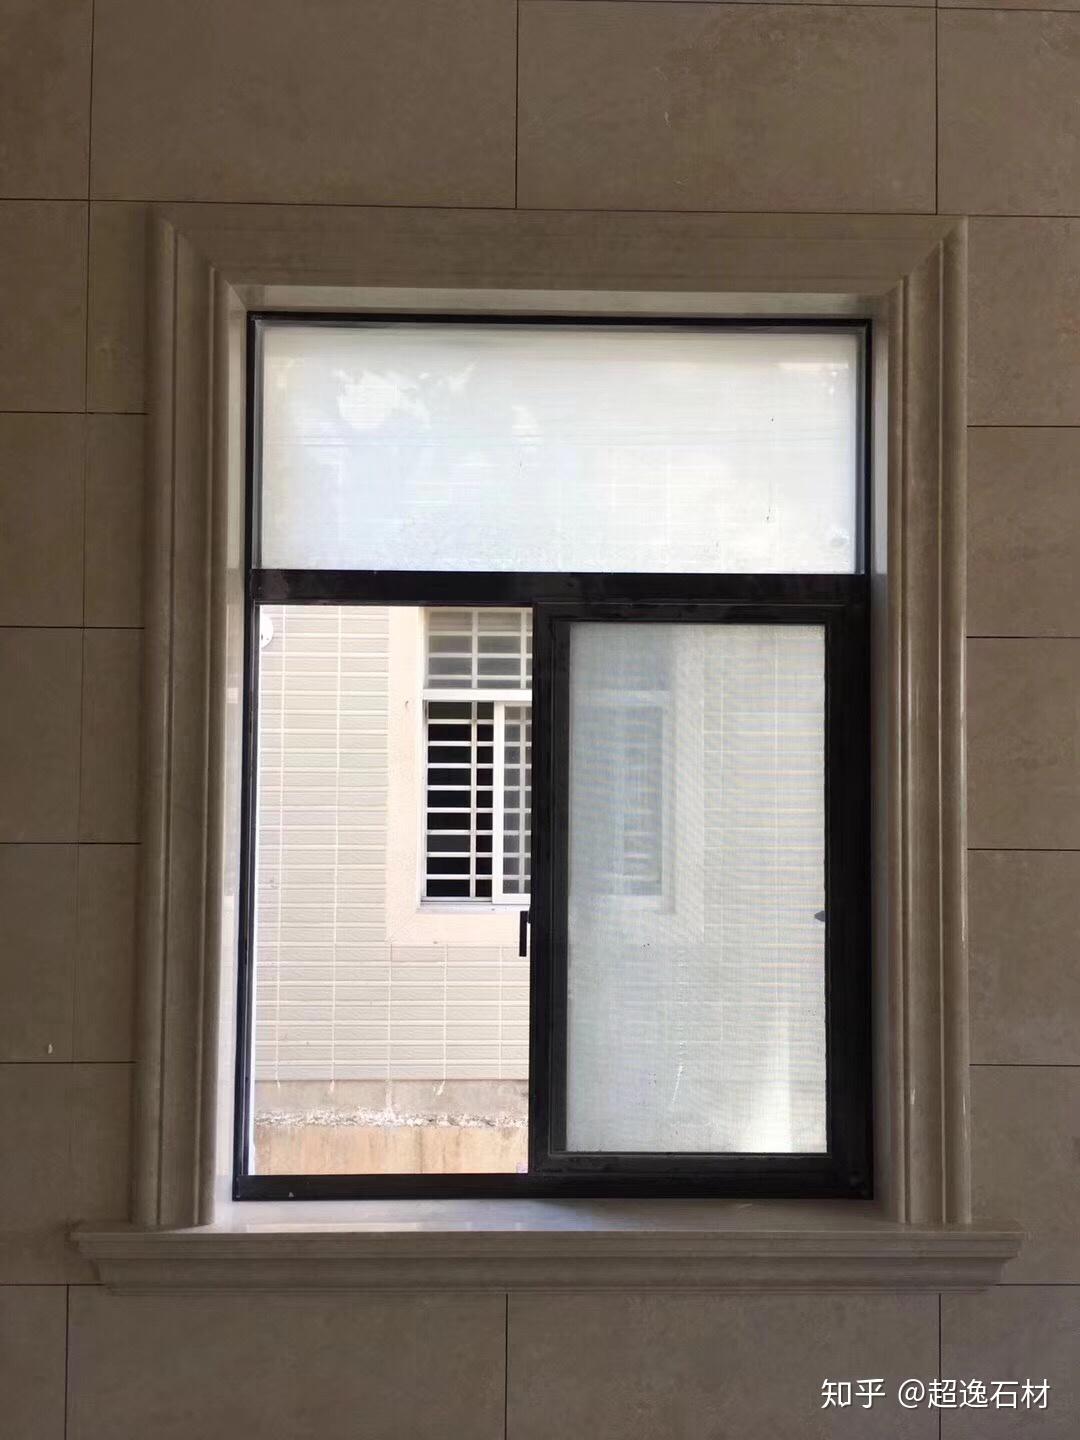 门套和窗套颜色都是白色但是窗套是石材的可以吗会不会不统一难看